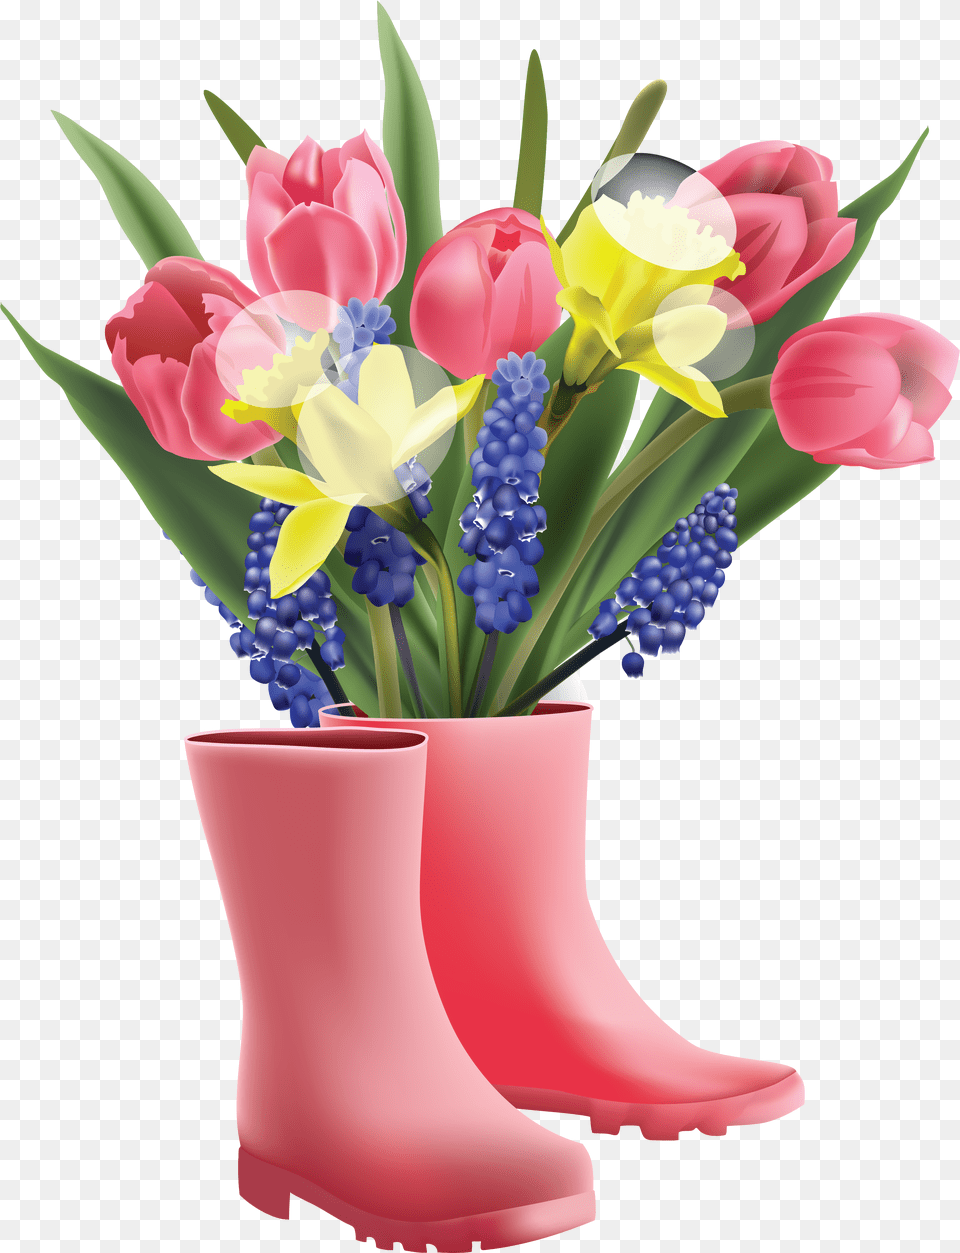 Flower Bouquet Clip Art, Flower Arrangement, Flower Bouquet, Plant, Pottery Free Transparent Png